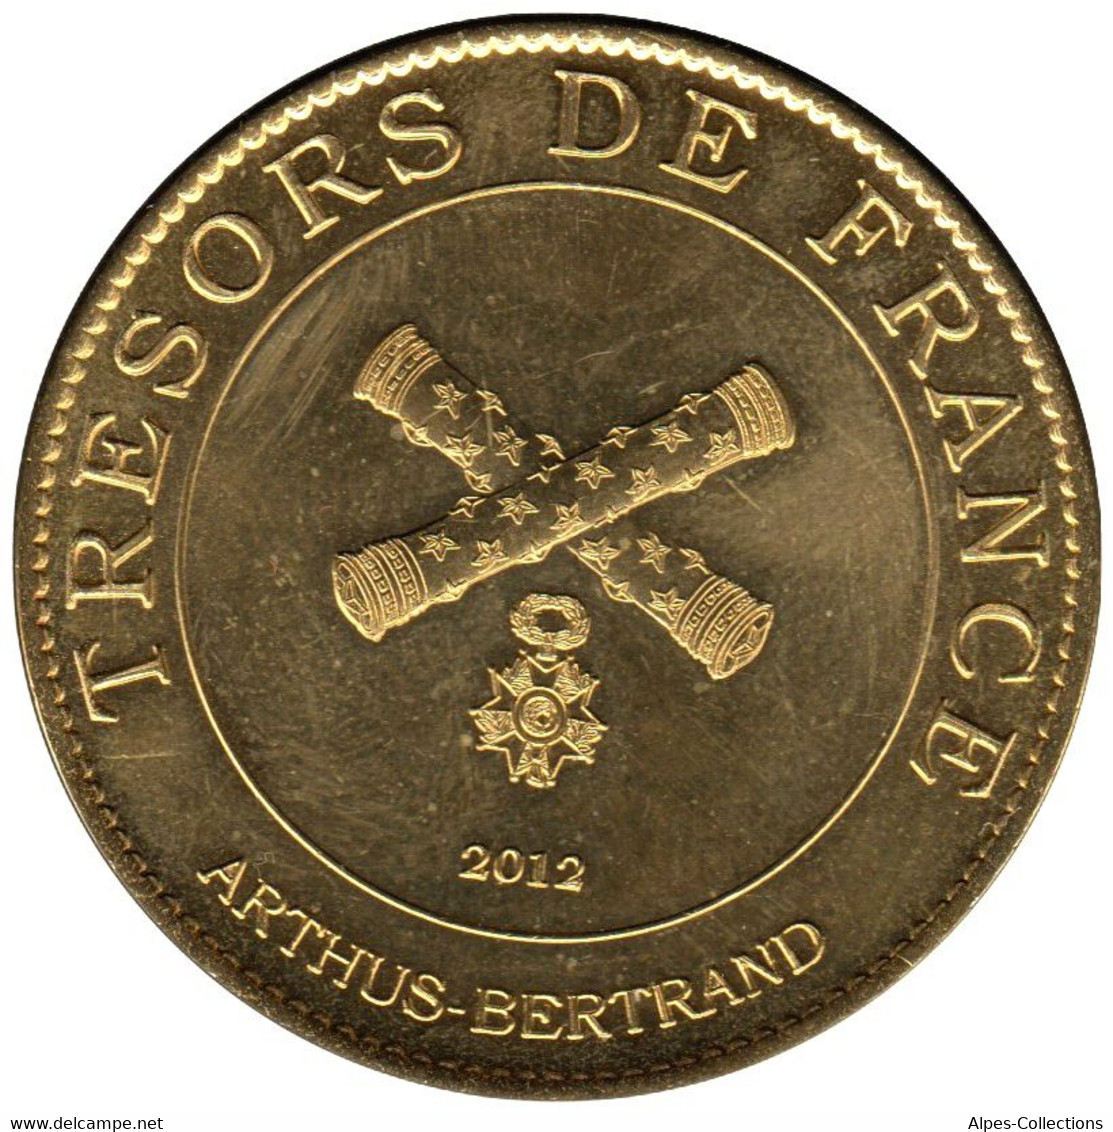 A25056-03 - JETON TOURISTIQUE ARTHUS B. - Citadelle De Besançon UNESCO - 2012.3 - 2012